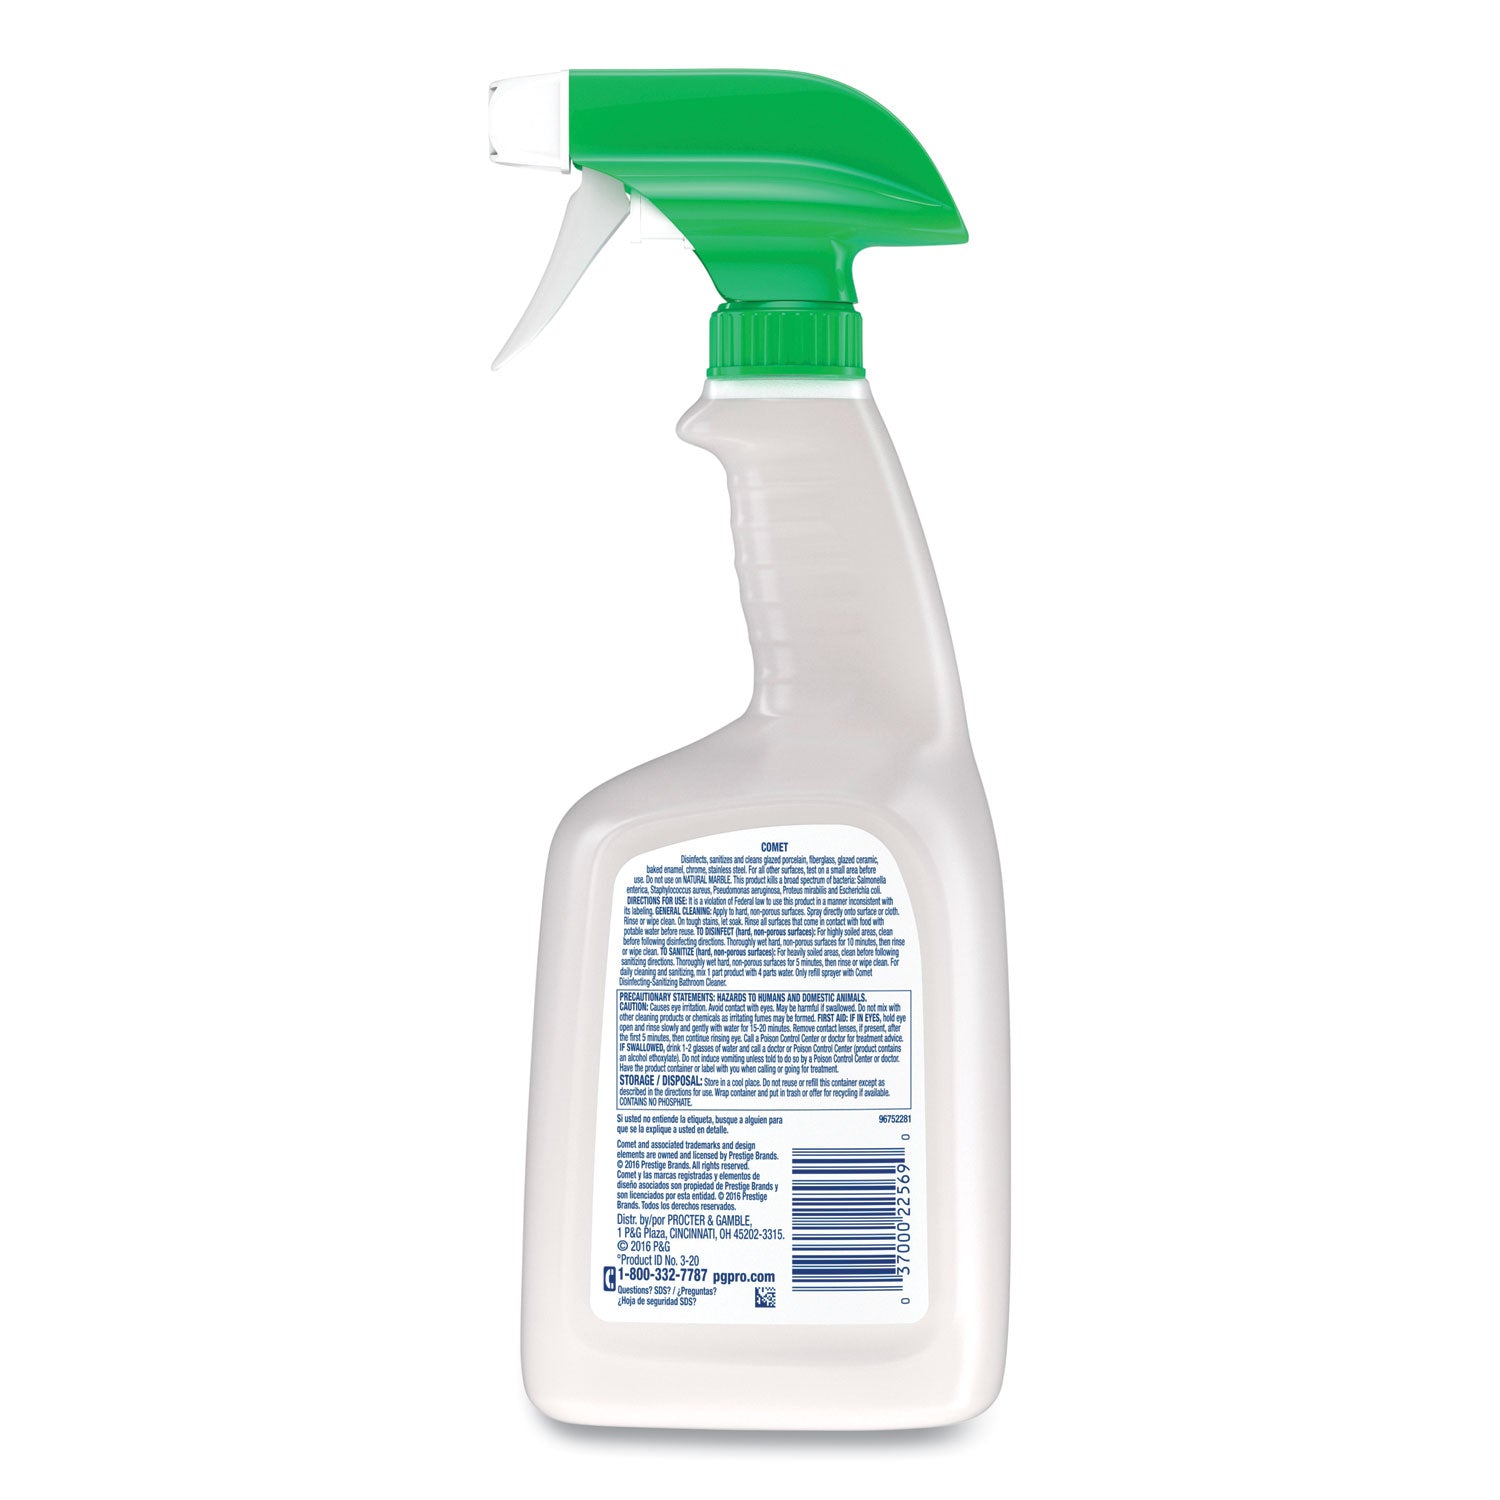 disinfecting-sanitizing-bathroom-cleaner-32-oz-trigger-spray-bottle_pgc19214ea - 2